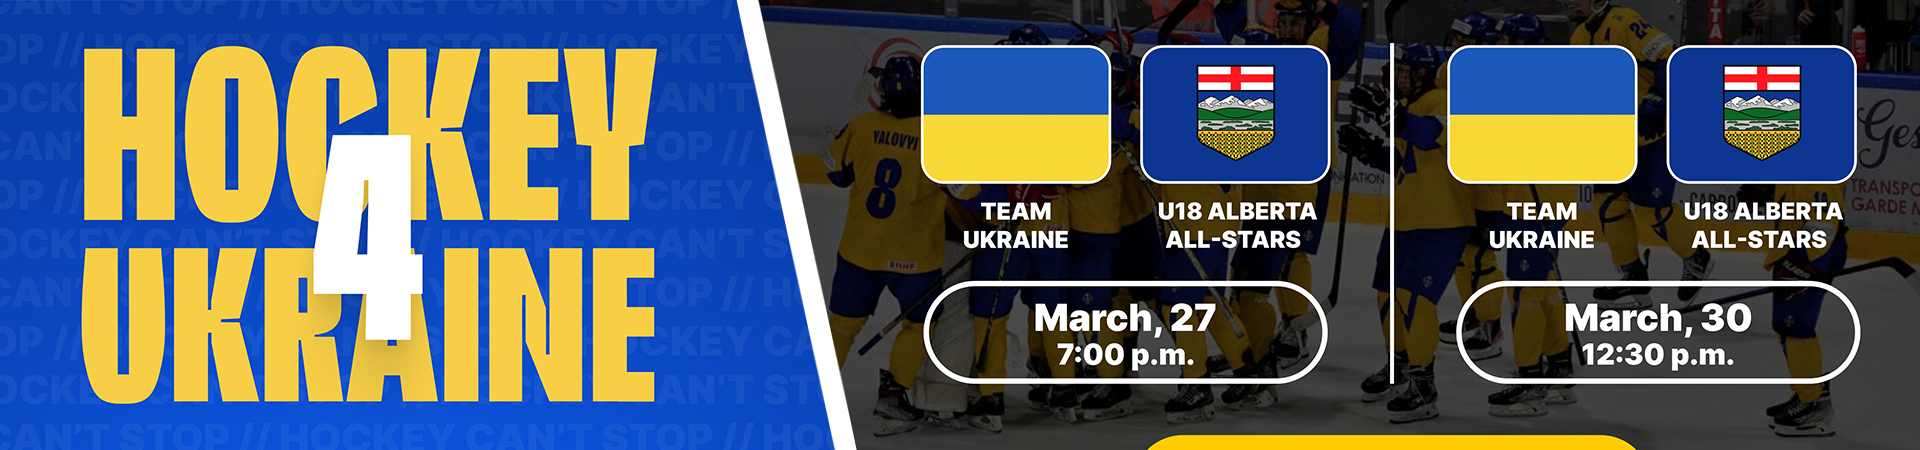 Hockey 4 Ukraine